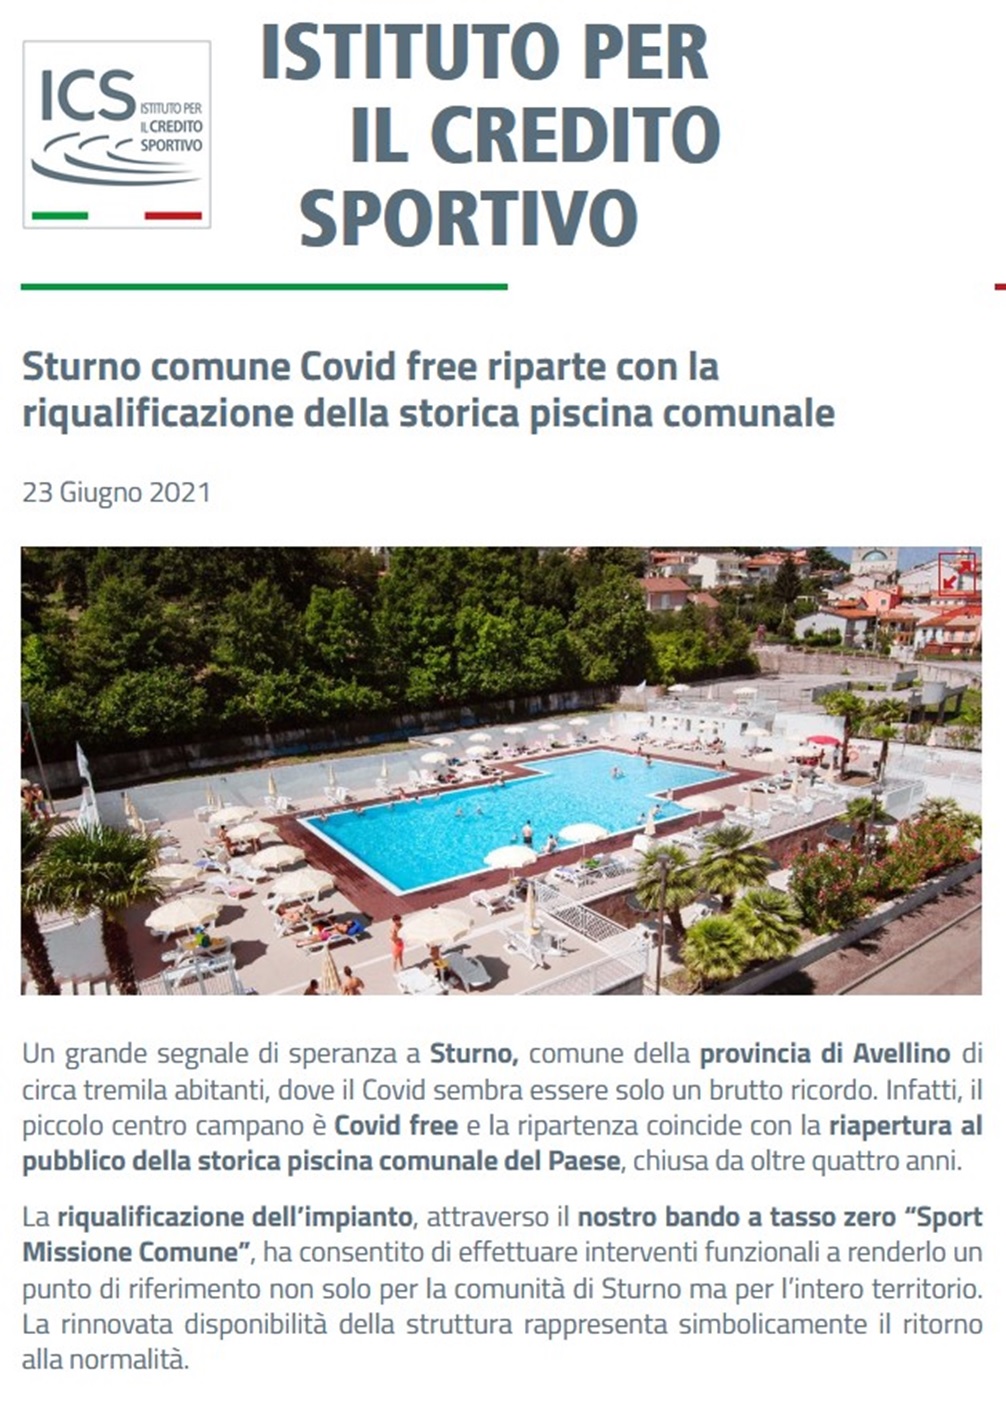 Sturno comune Covid free riparte con la riqualificazione della storica piscina comunale 